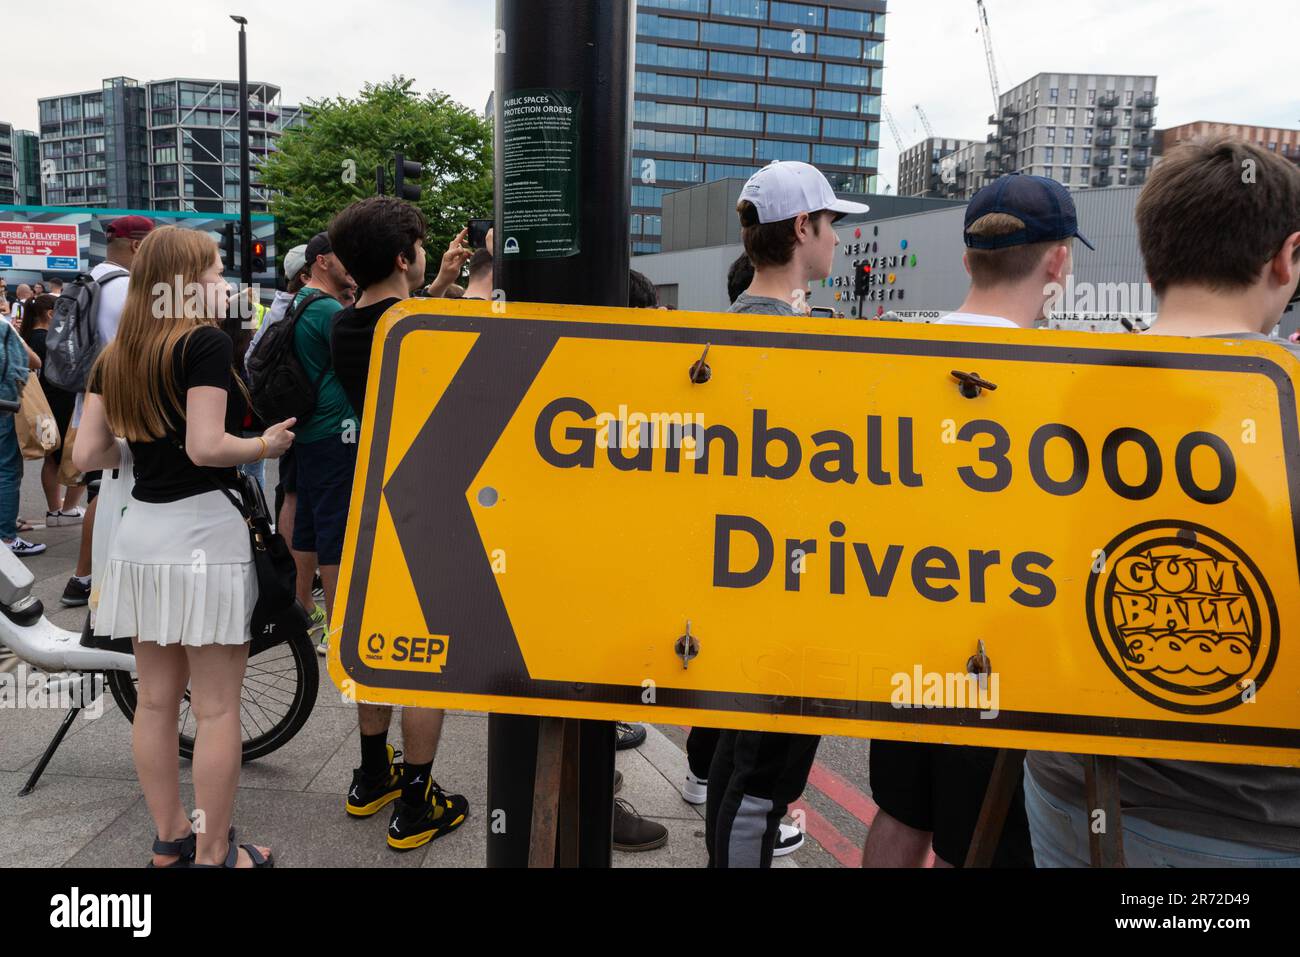 Panneau pour l'événement de rallye de voitures de grande puissance Gumball 3000 en visite à la station électrique de Battersea, Londres, Royaume-Uni. Foule prête Banque D'Images